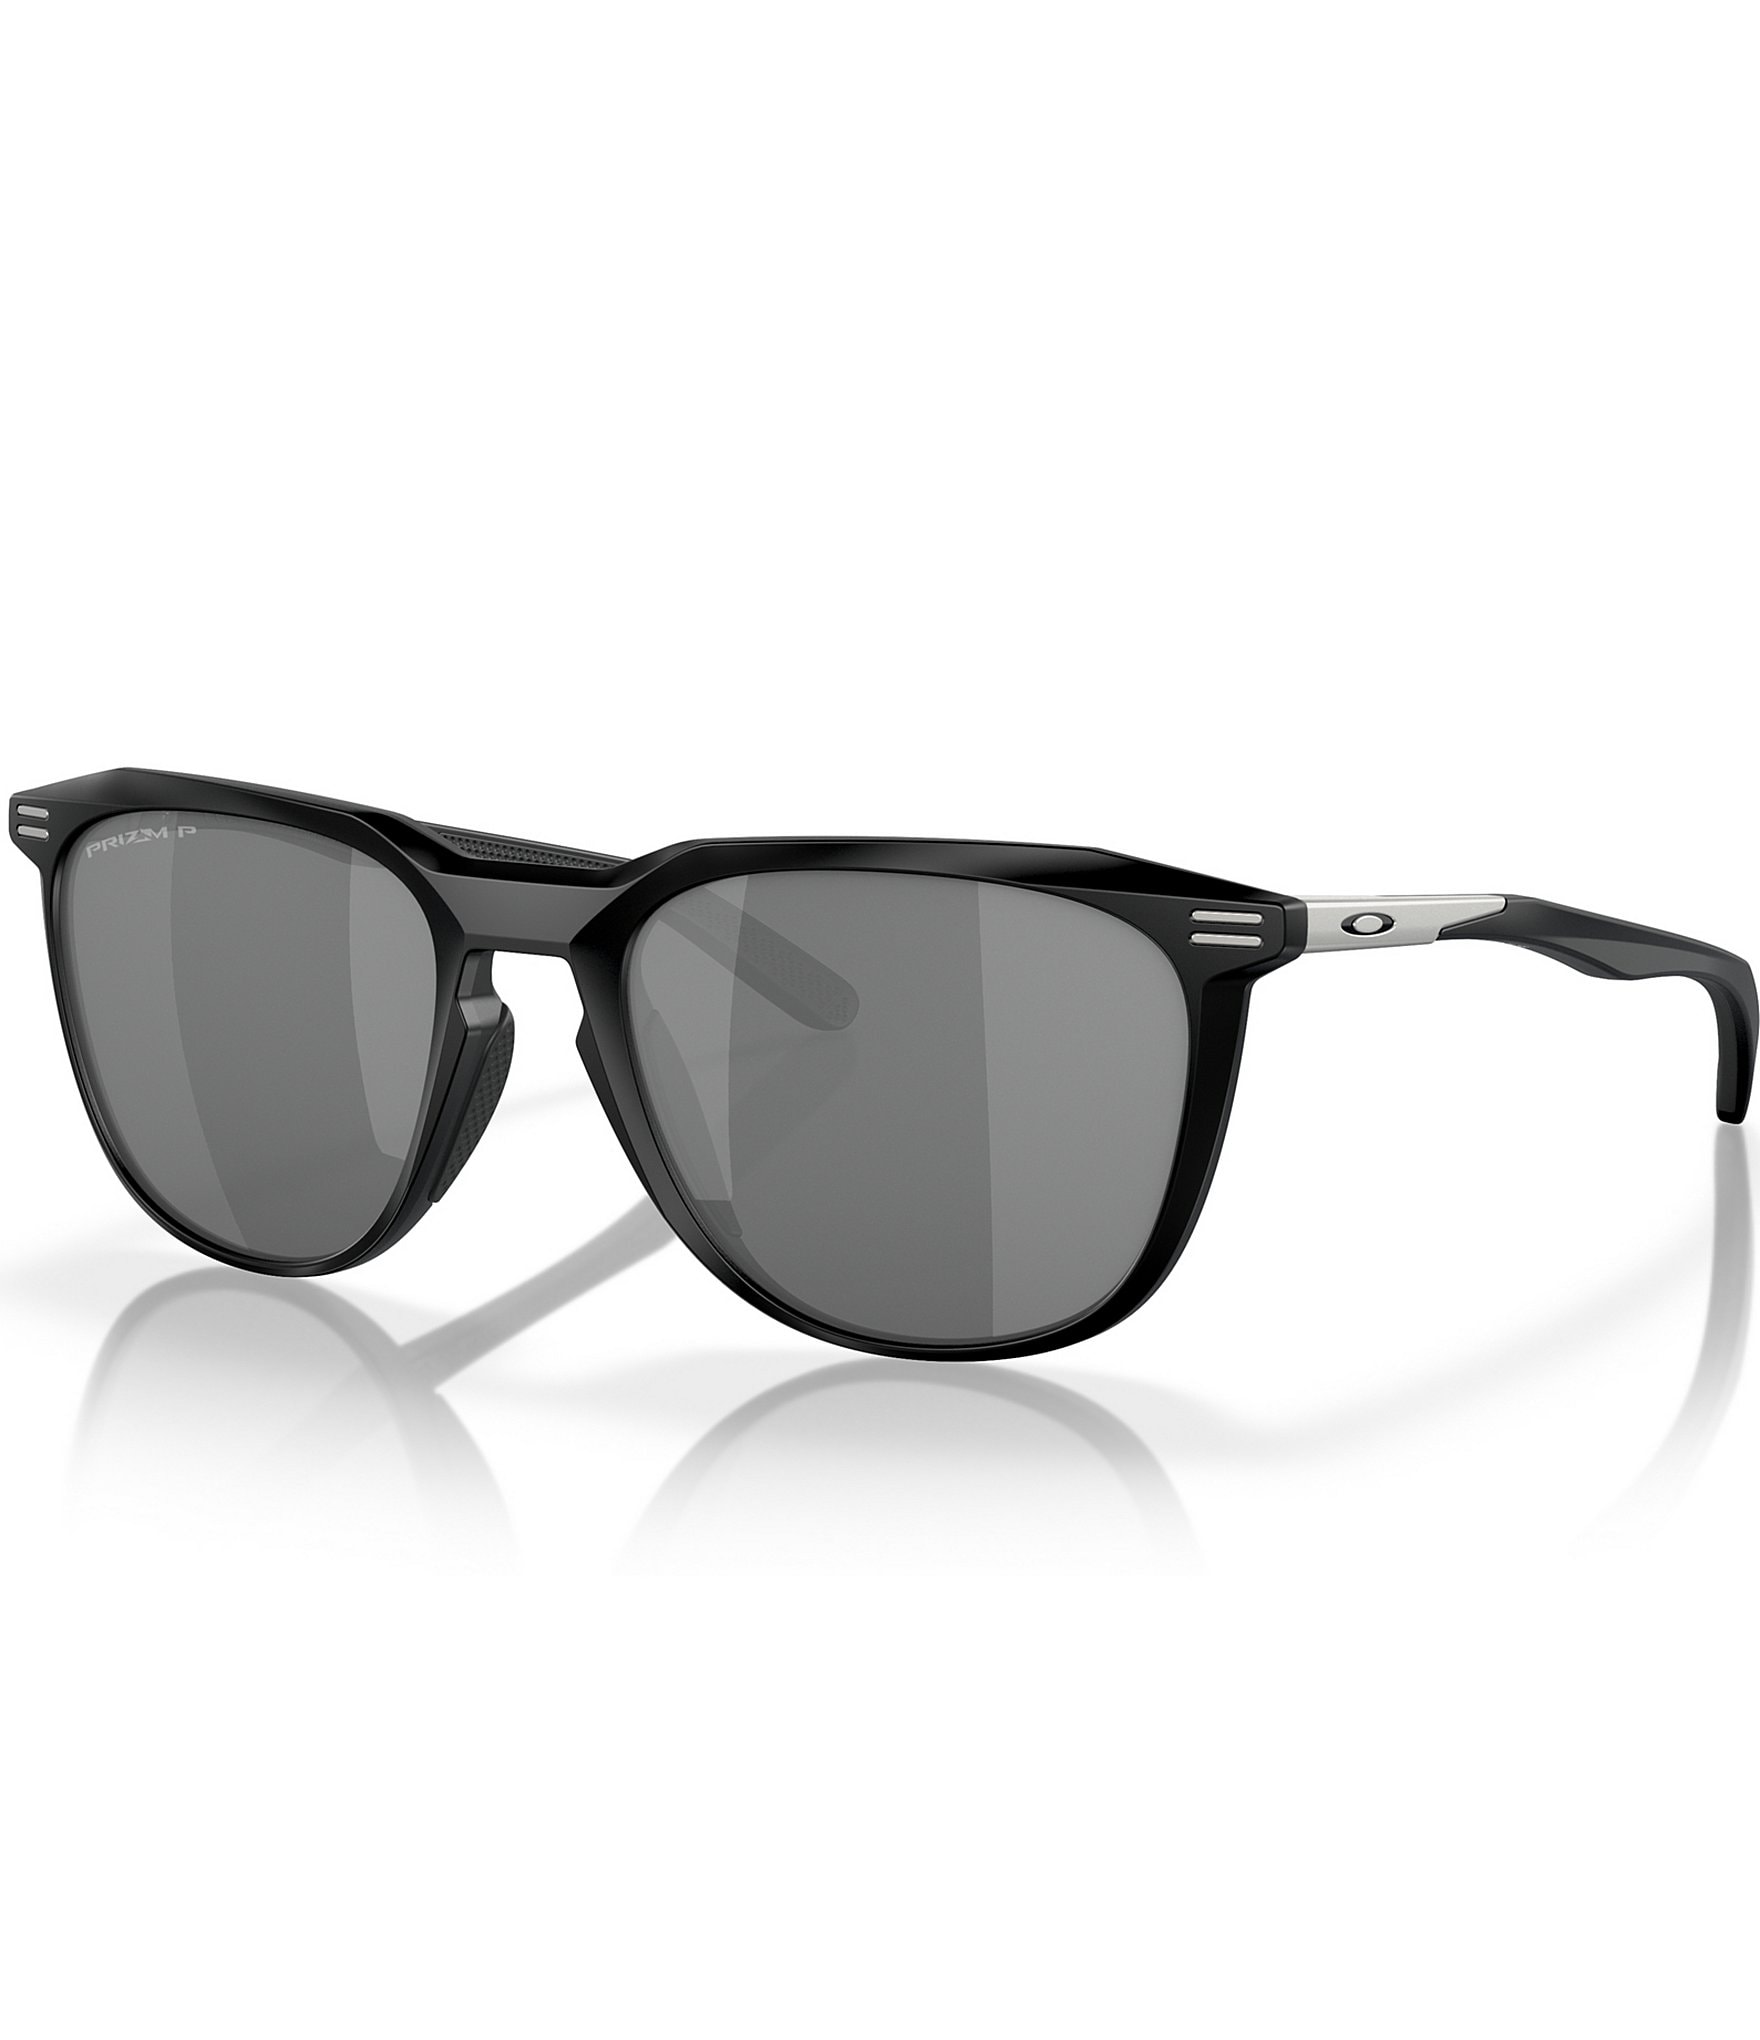 costa sunglasses: Men's Polarized Sunglasses